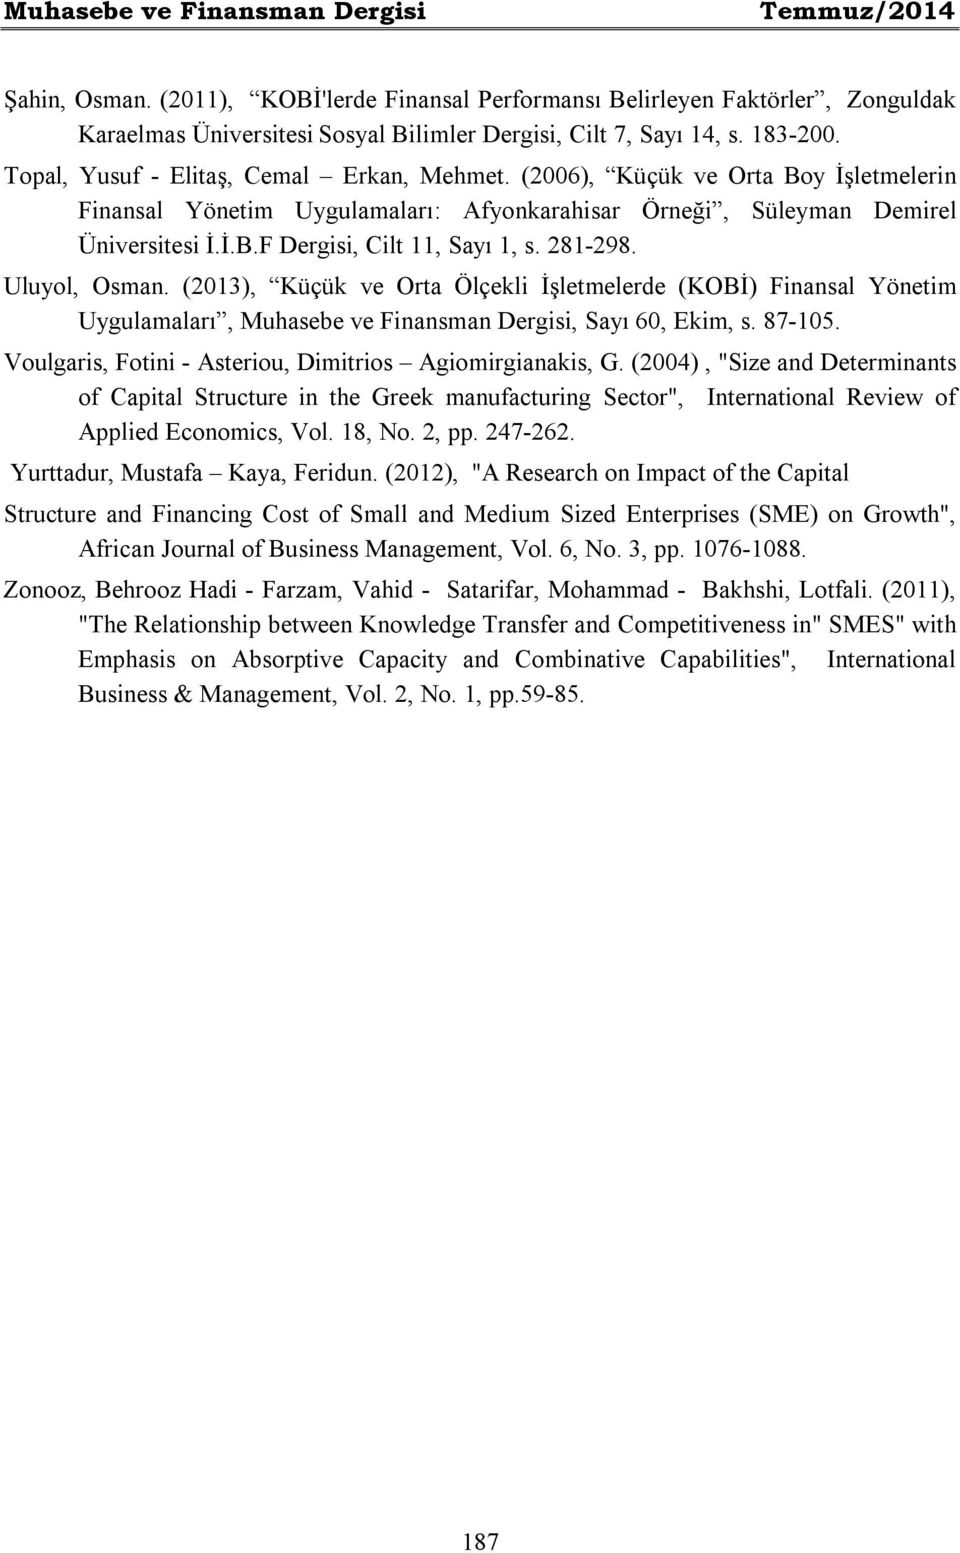 281-298. Uluyol, Osman. (2013), Küçük ve Orta Ölçekli İşletmelerde (KOBİ) Finansal Yönetim Uygulamaları, Muhasebe ve Finansman Dergisi, Sayı 60, Ekim, s. 87-105.